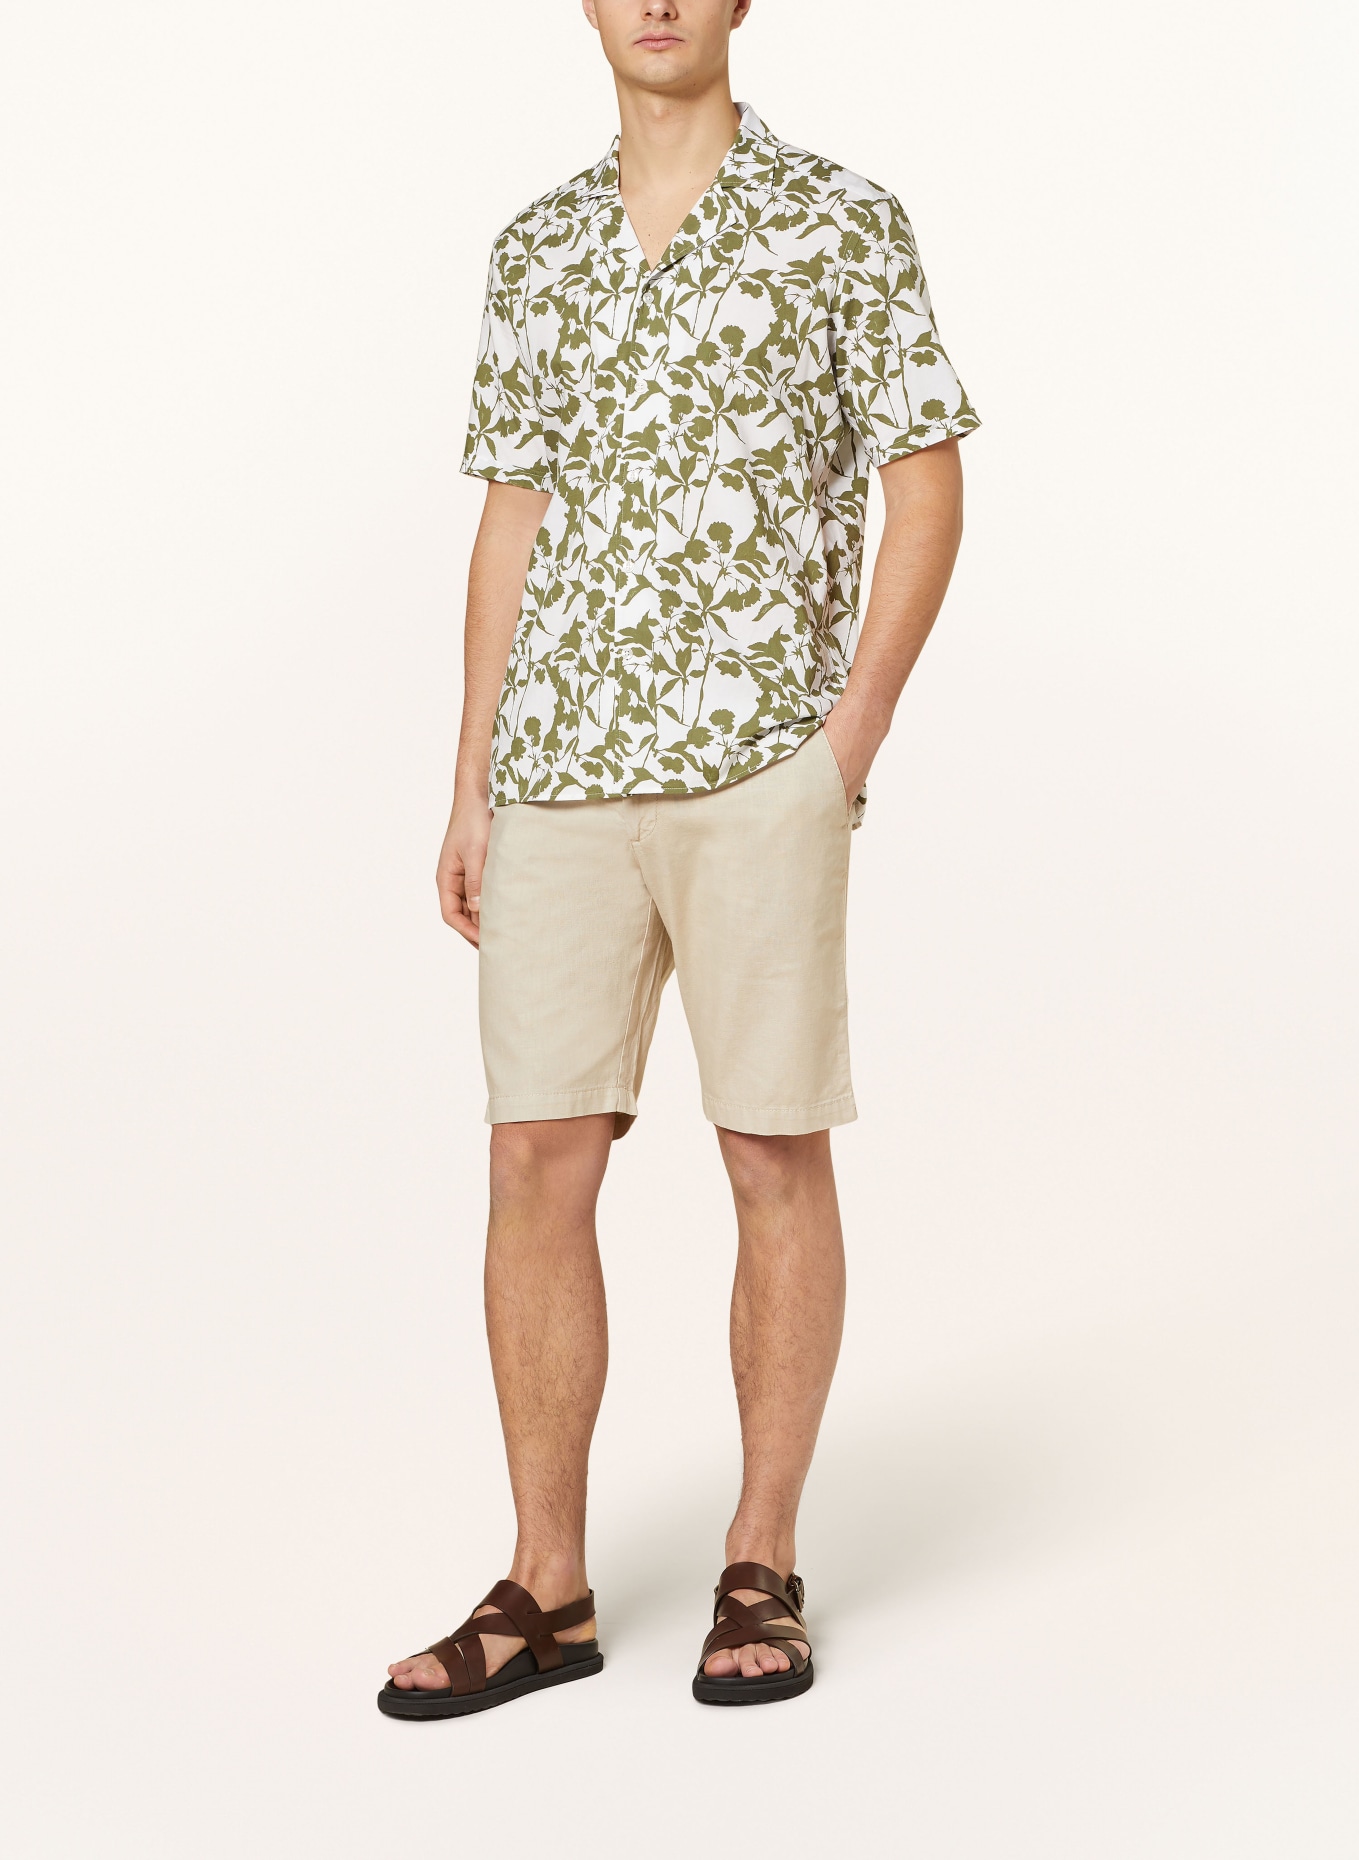 STROKESMAN'S Shorts Slim Fit mit Leinen, Farbe: 0202 sand (Bild 2)